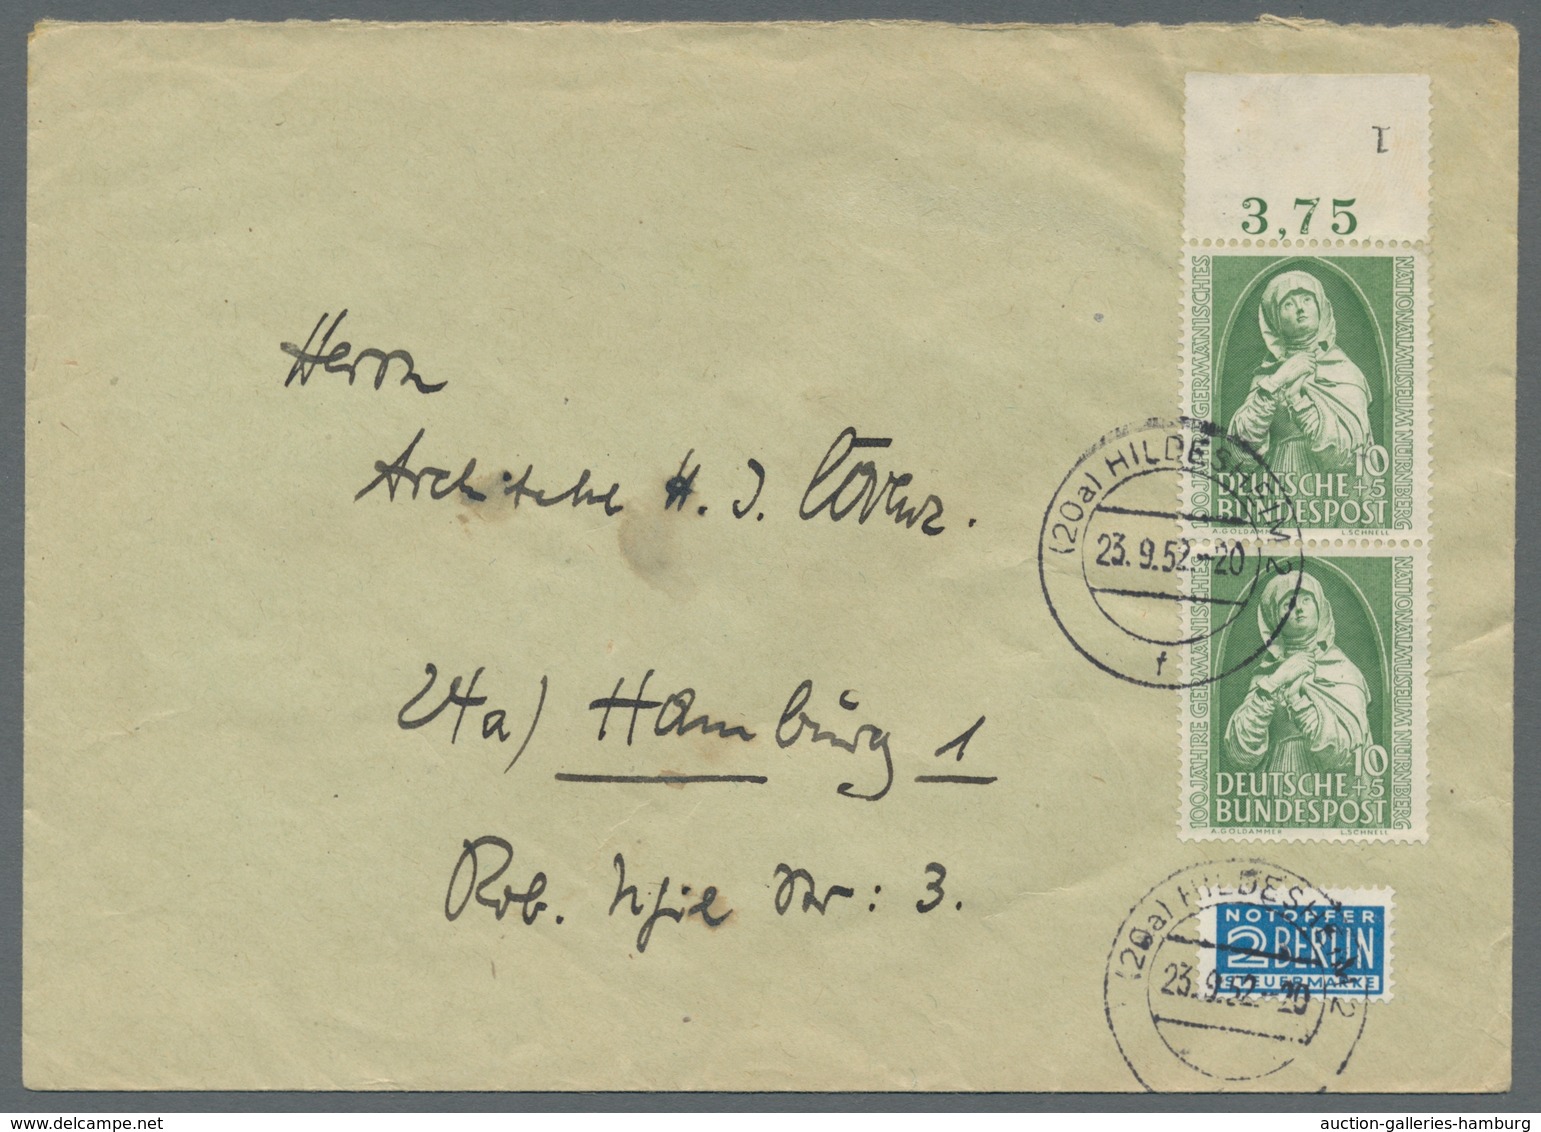 Bundesrepublik Deutschland: 1949 - ca. 1965 umfangreiche Briefesammlung mit vielen guten Stücken, üb